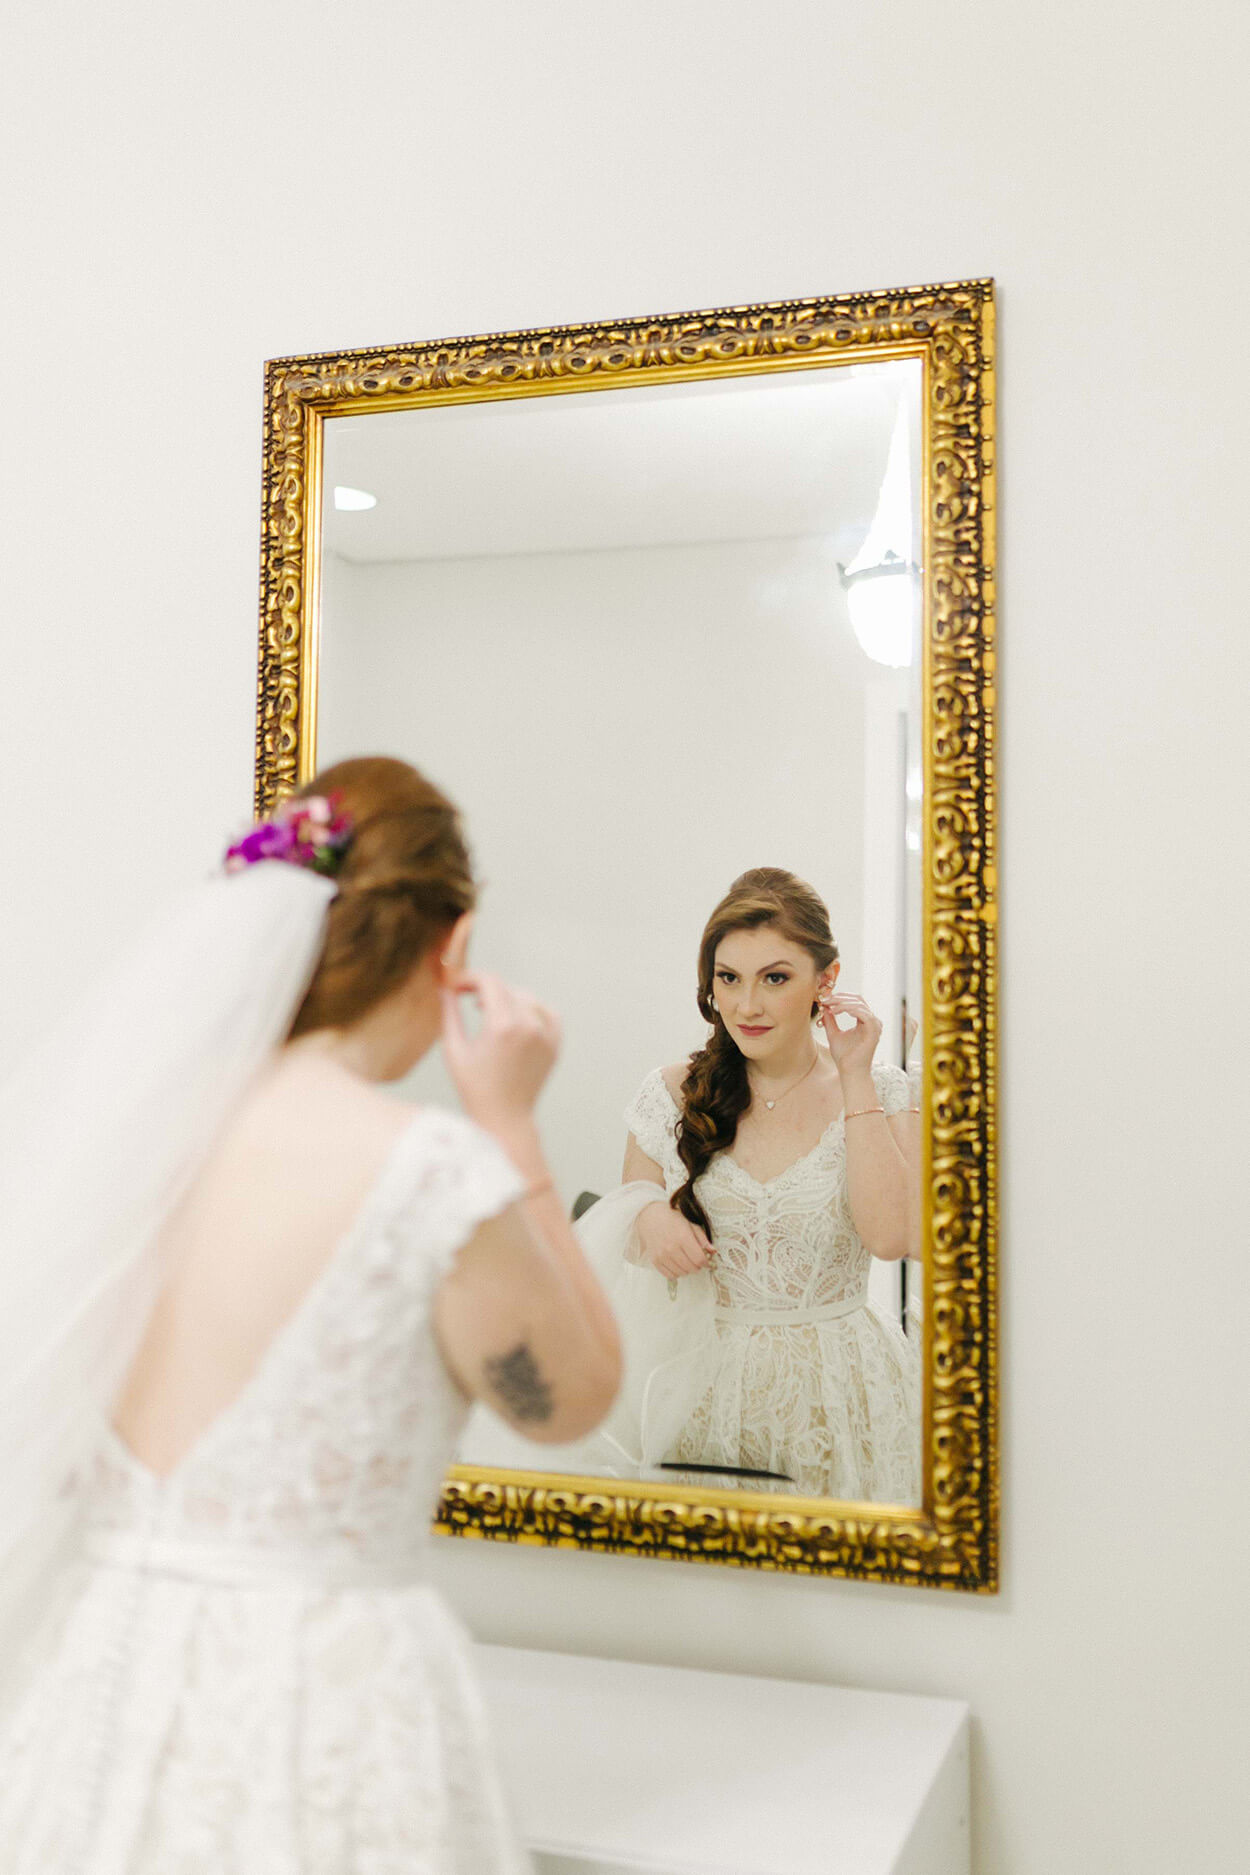 Mulher ruiva com vestido de noiva e véu se olhando no espelho com moldura clássica dourada